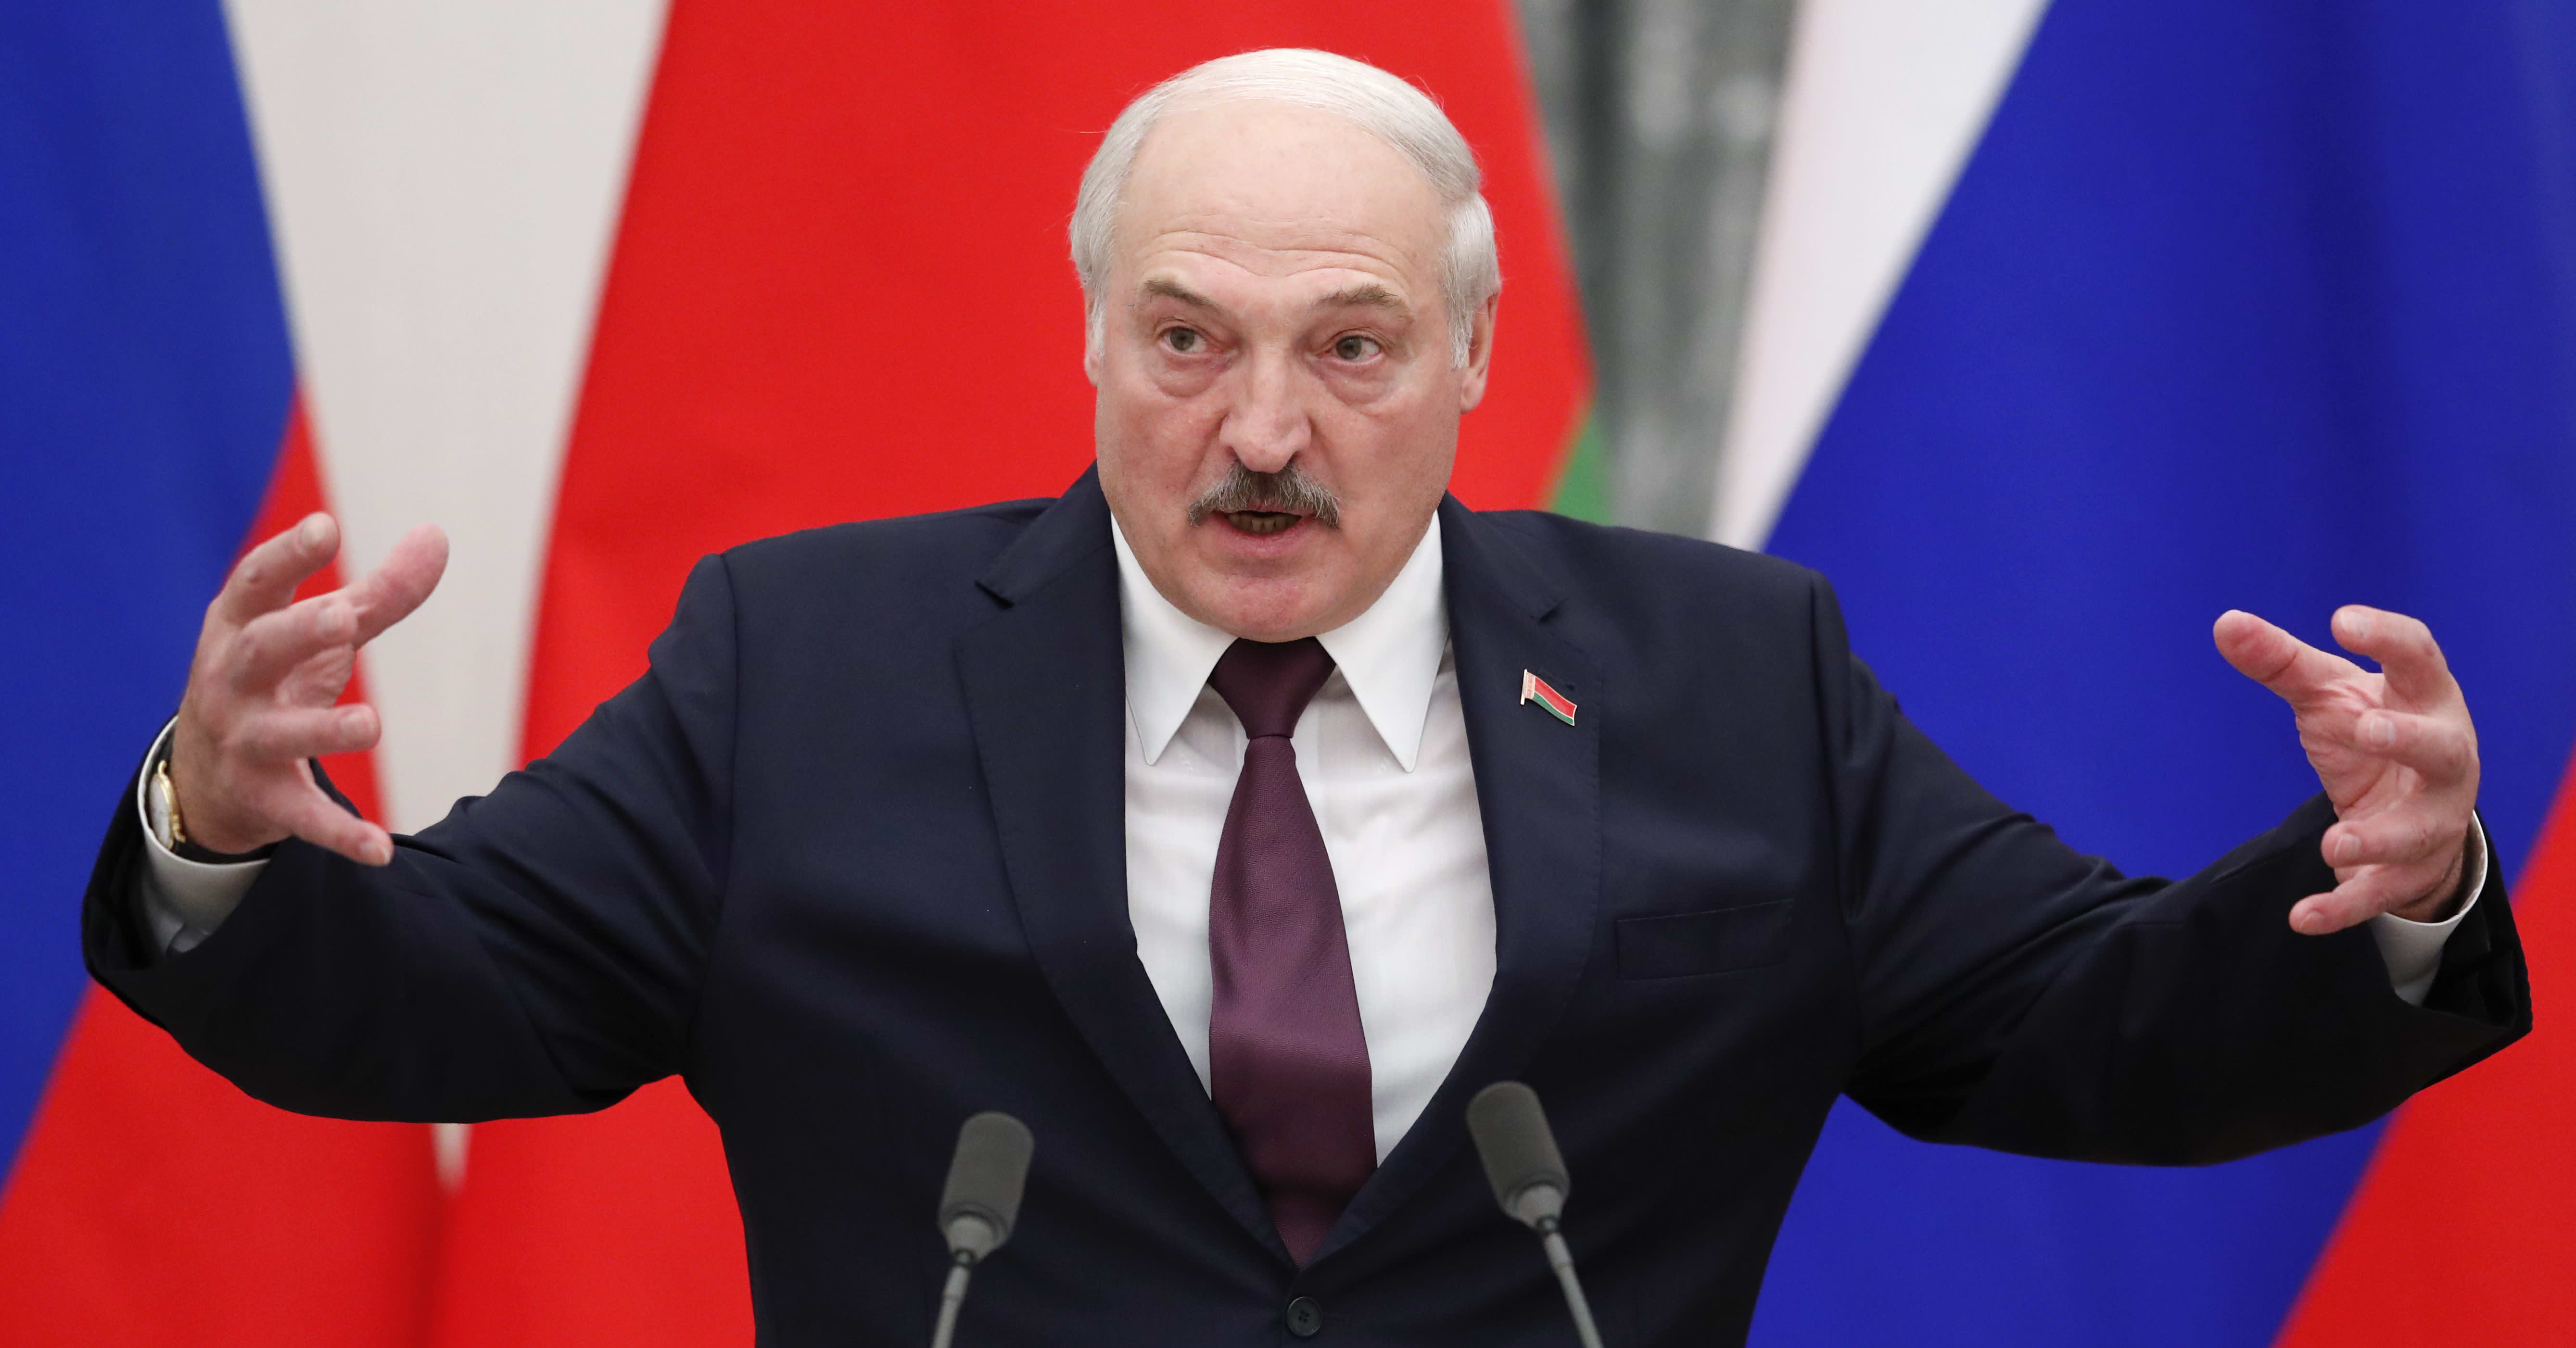 “Me lämmitämme Eurooppaa, mitä jos katkaisemme kaasun?” Lukašenkan uhkaus voi saada EU:n neuvottelupöytään, sanoo suomalaisprofessori